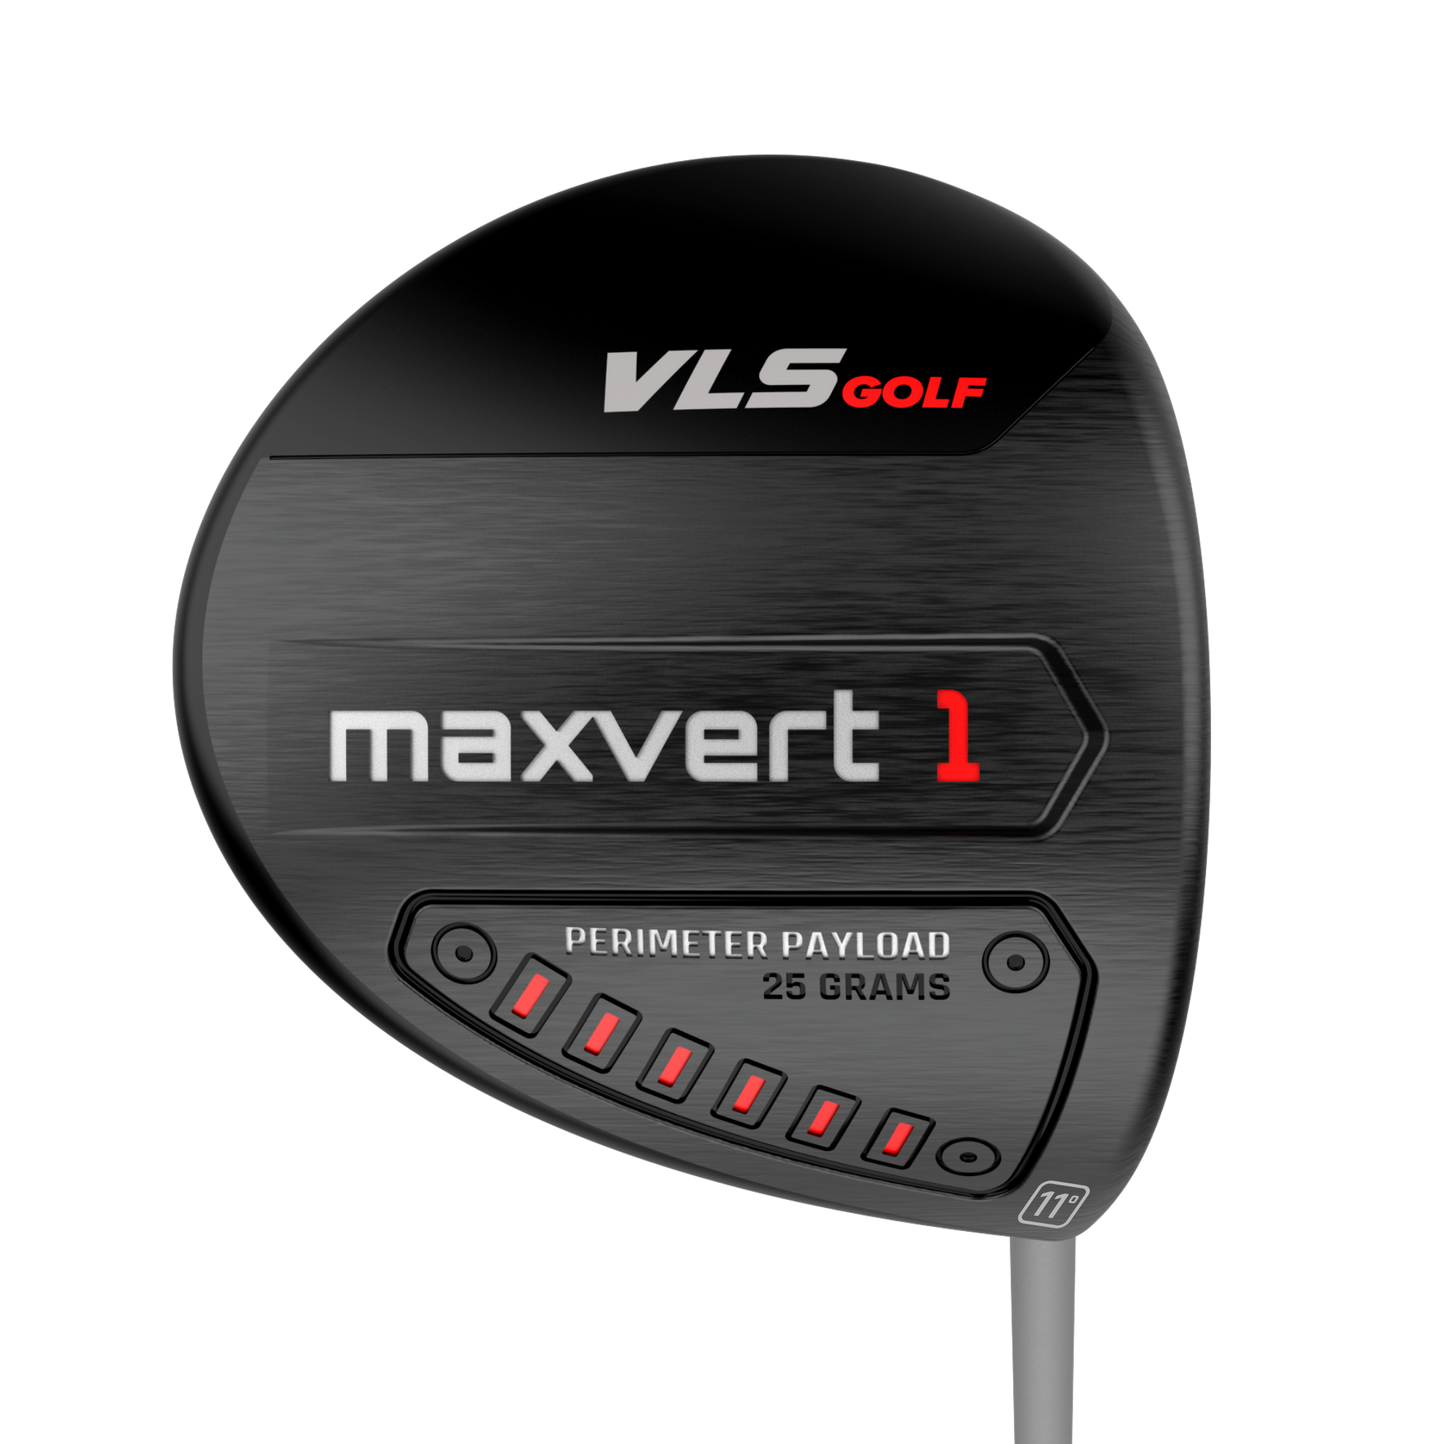 VLS Maxvert 1 Driver Deal